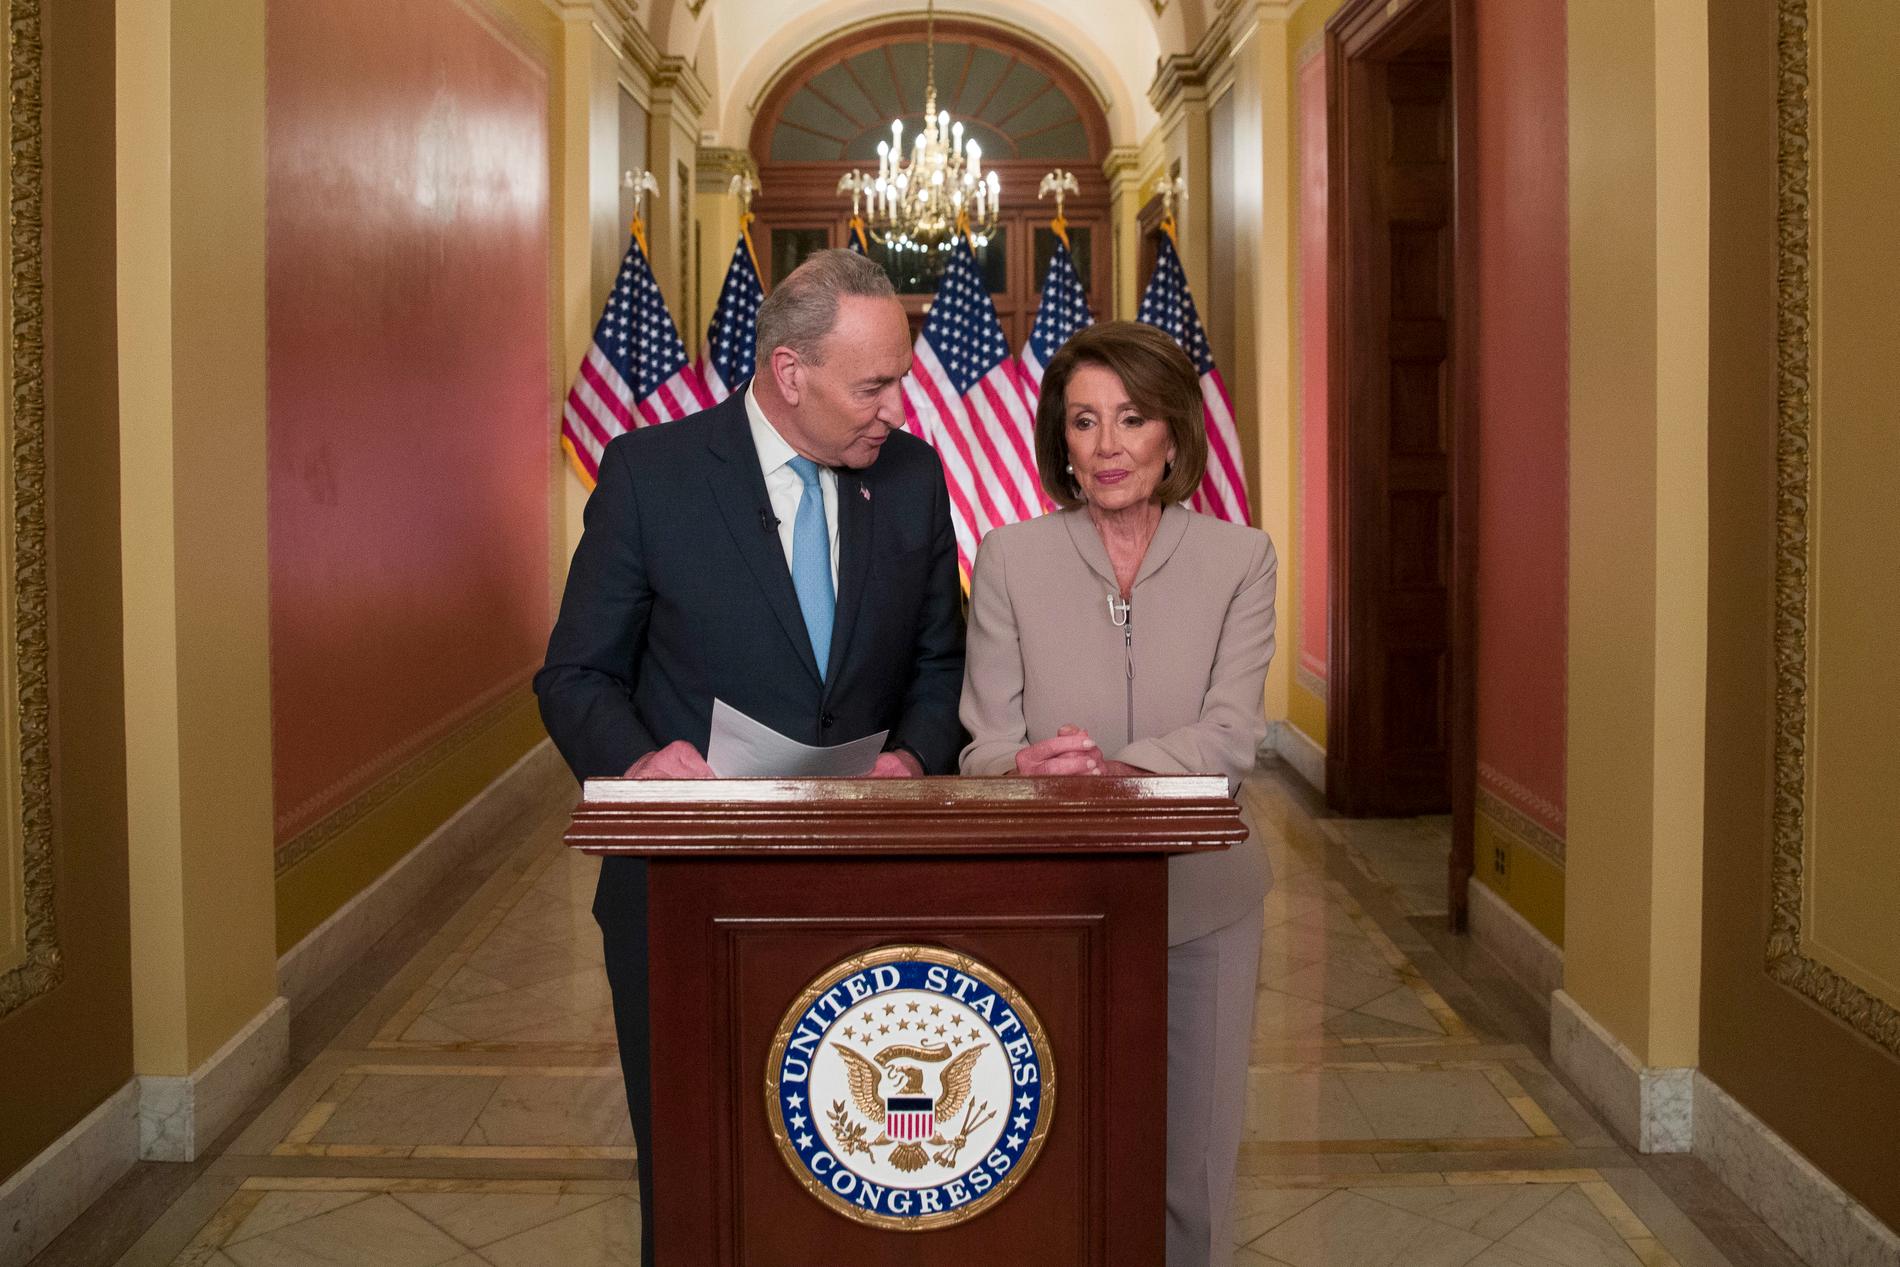 Demokraternas ledare i kongressen, talman Nancy Pelosi och senatens minoritetsledare Chuck Schumer, svarade på presidentens tal.